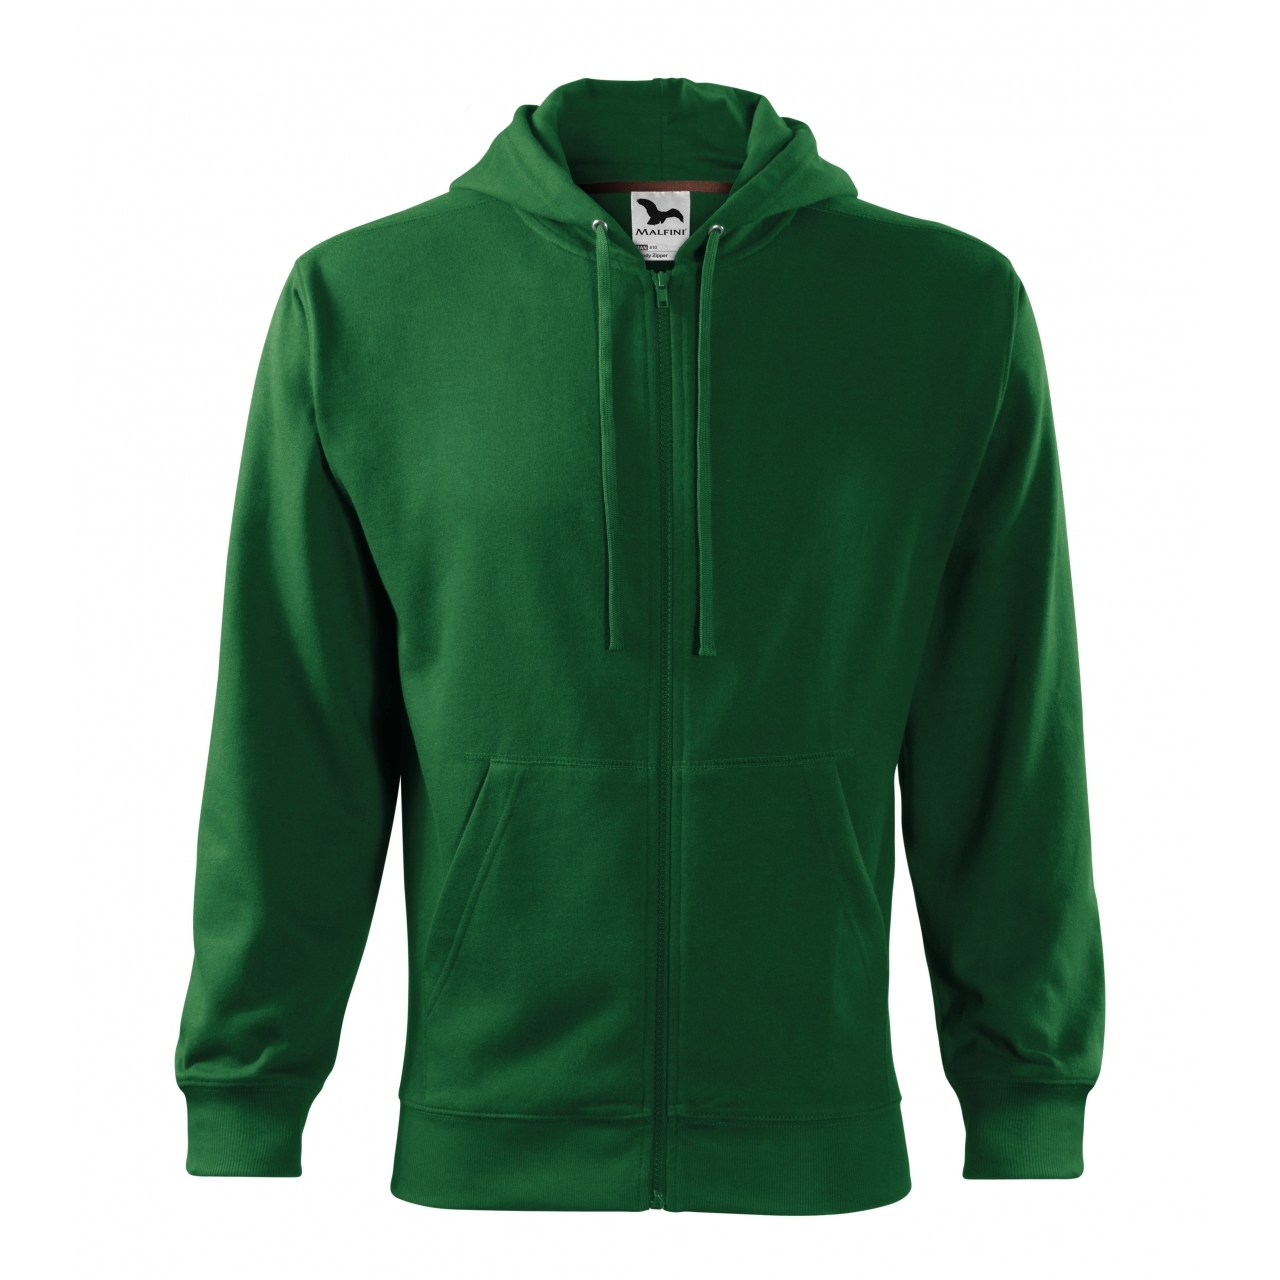 Mikina pánská Malfini Trendy Zipper - tmavě zelená, XL